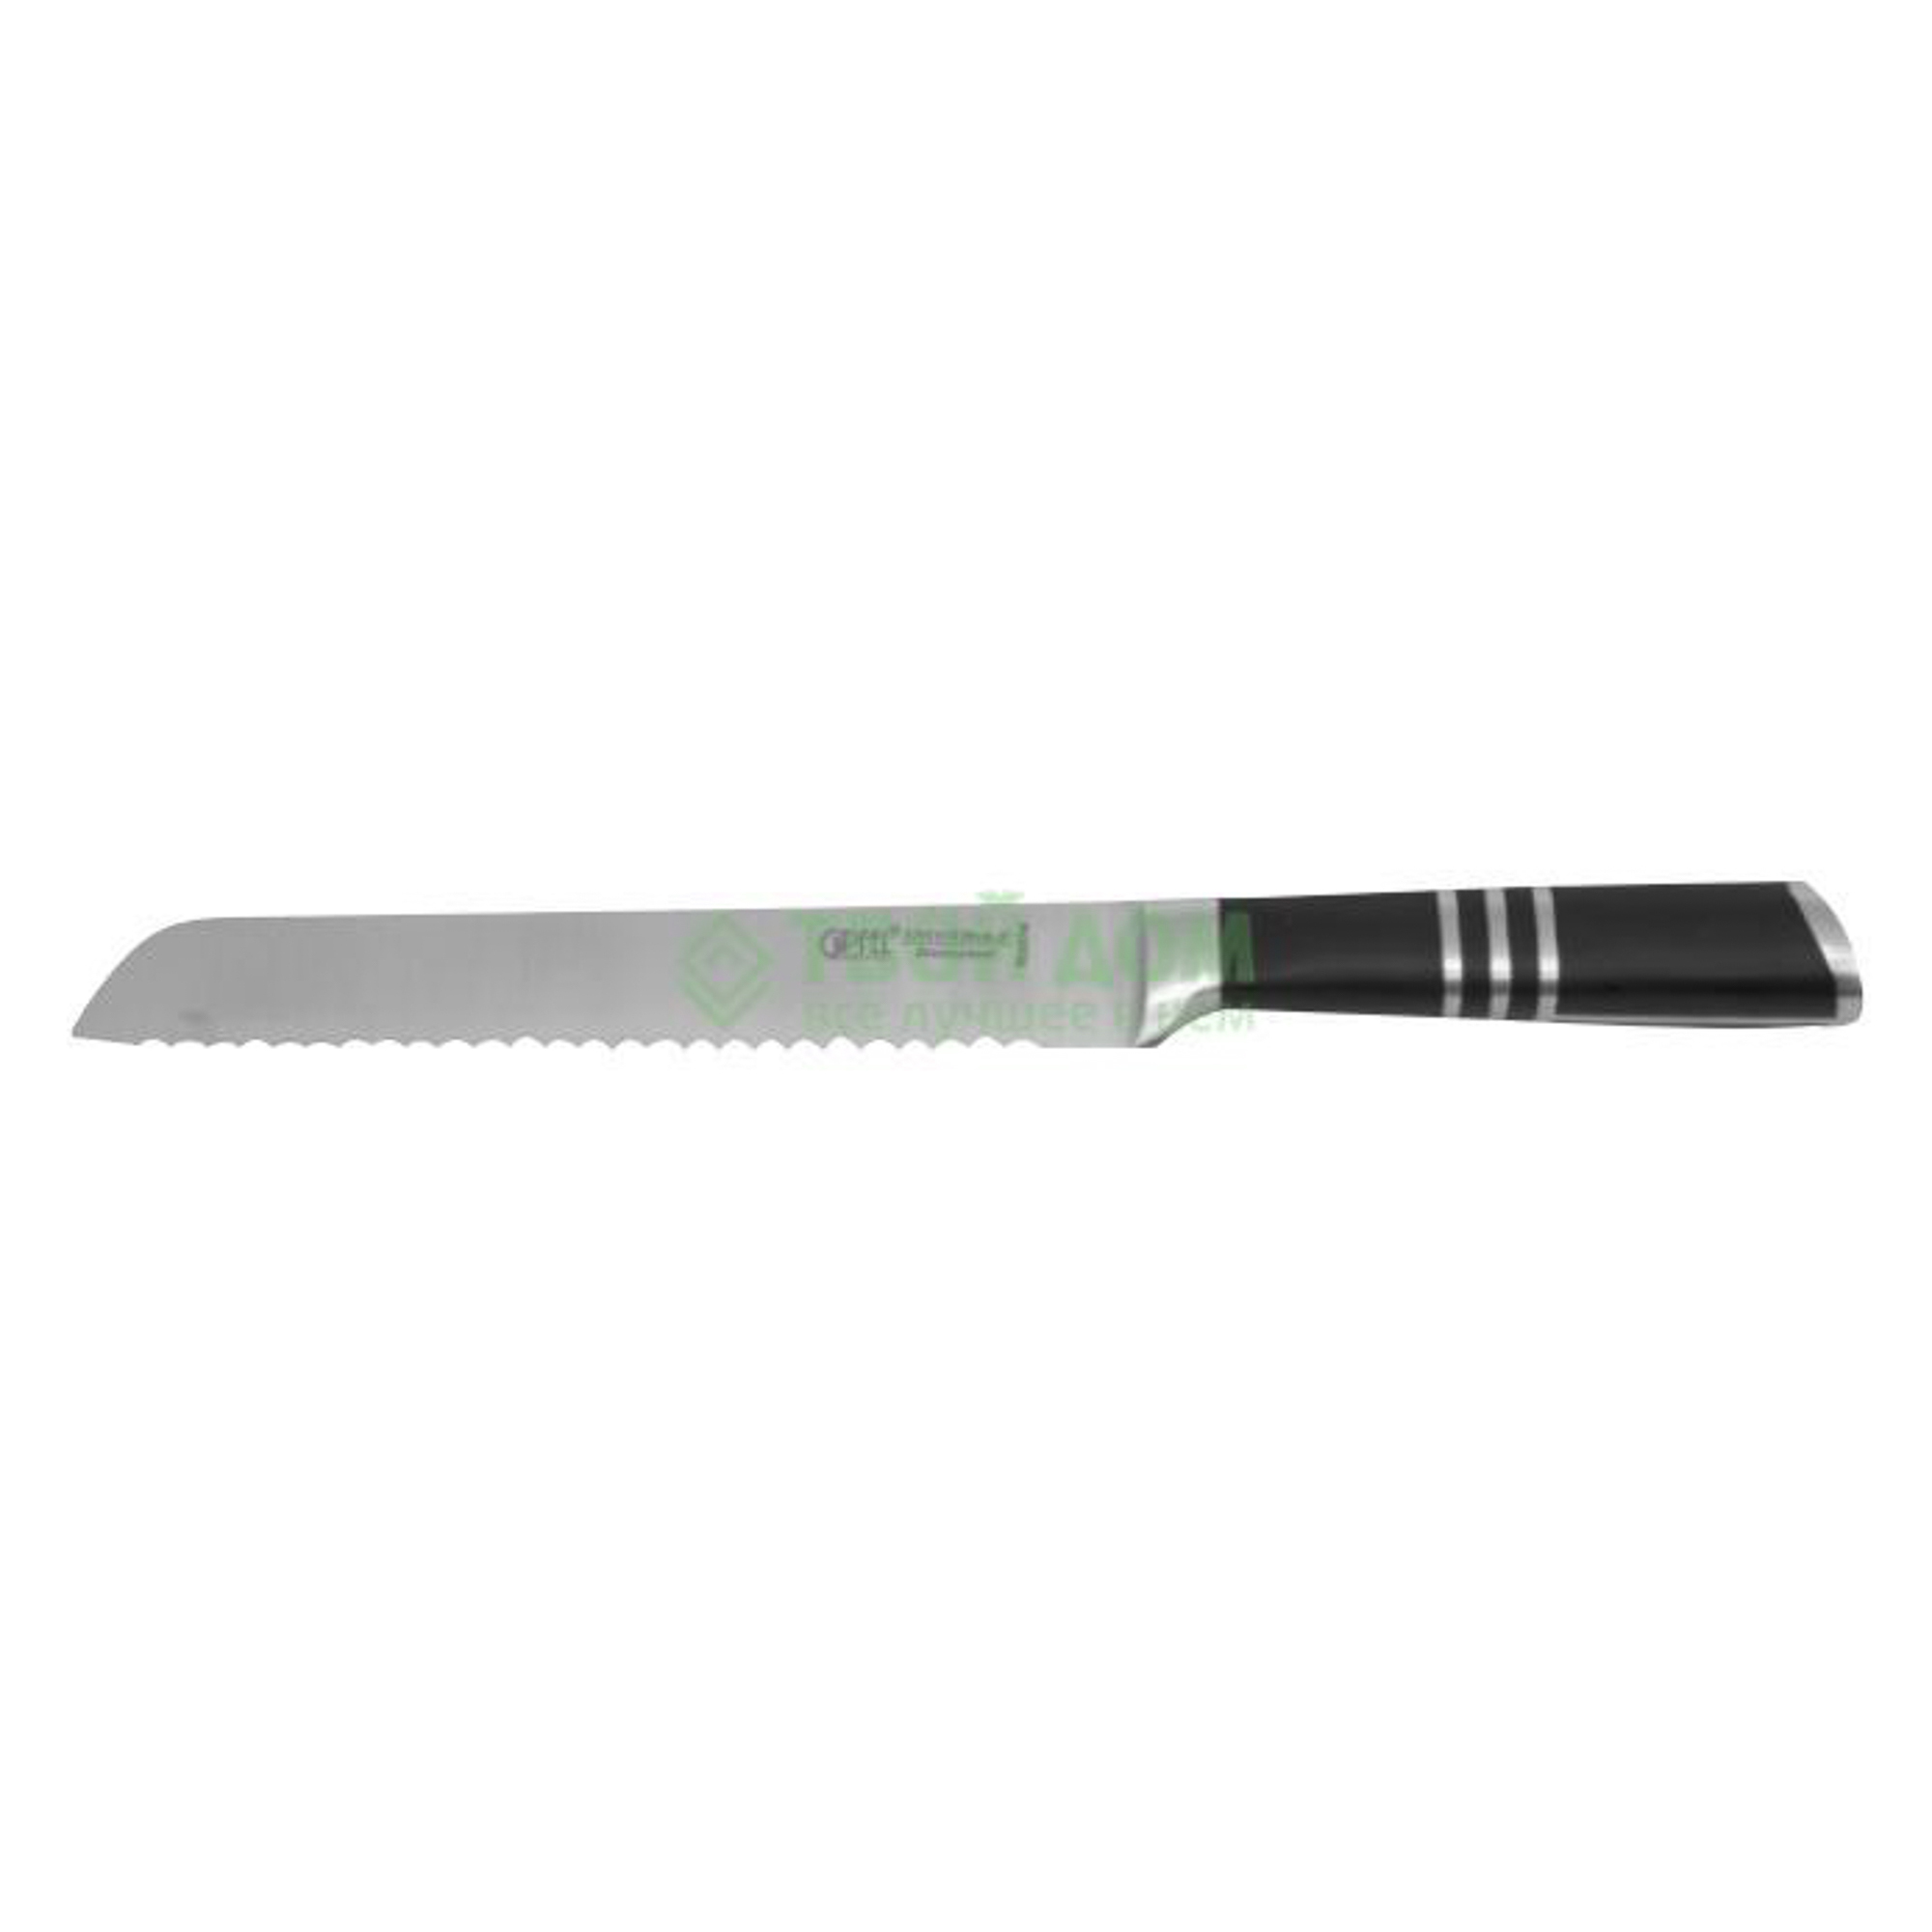 Нож для хлеба Gipfel Stillo 20,3 см нержавеющая сталь, цвет черный - фото 1